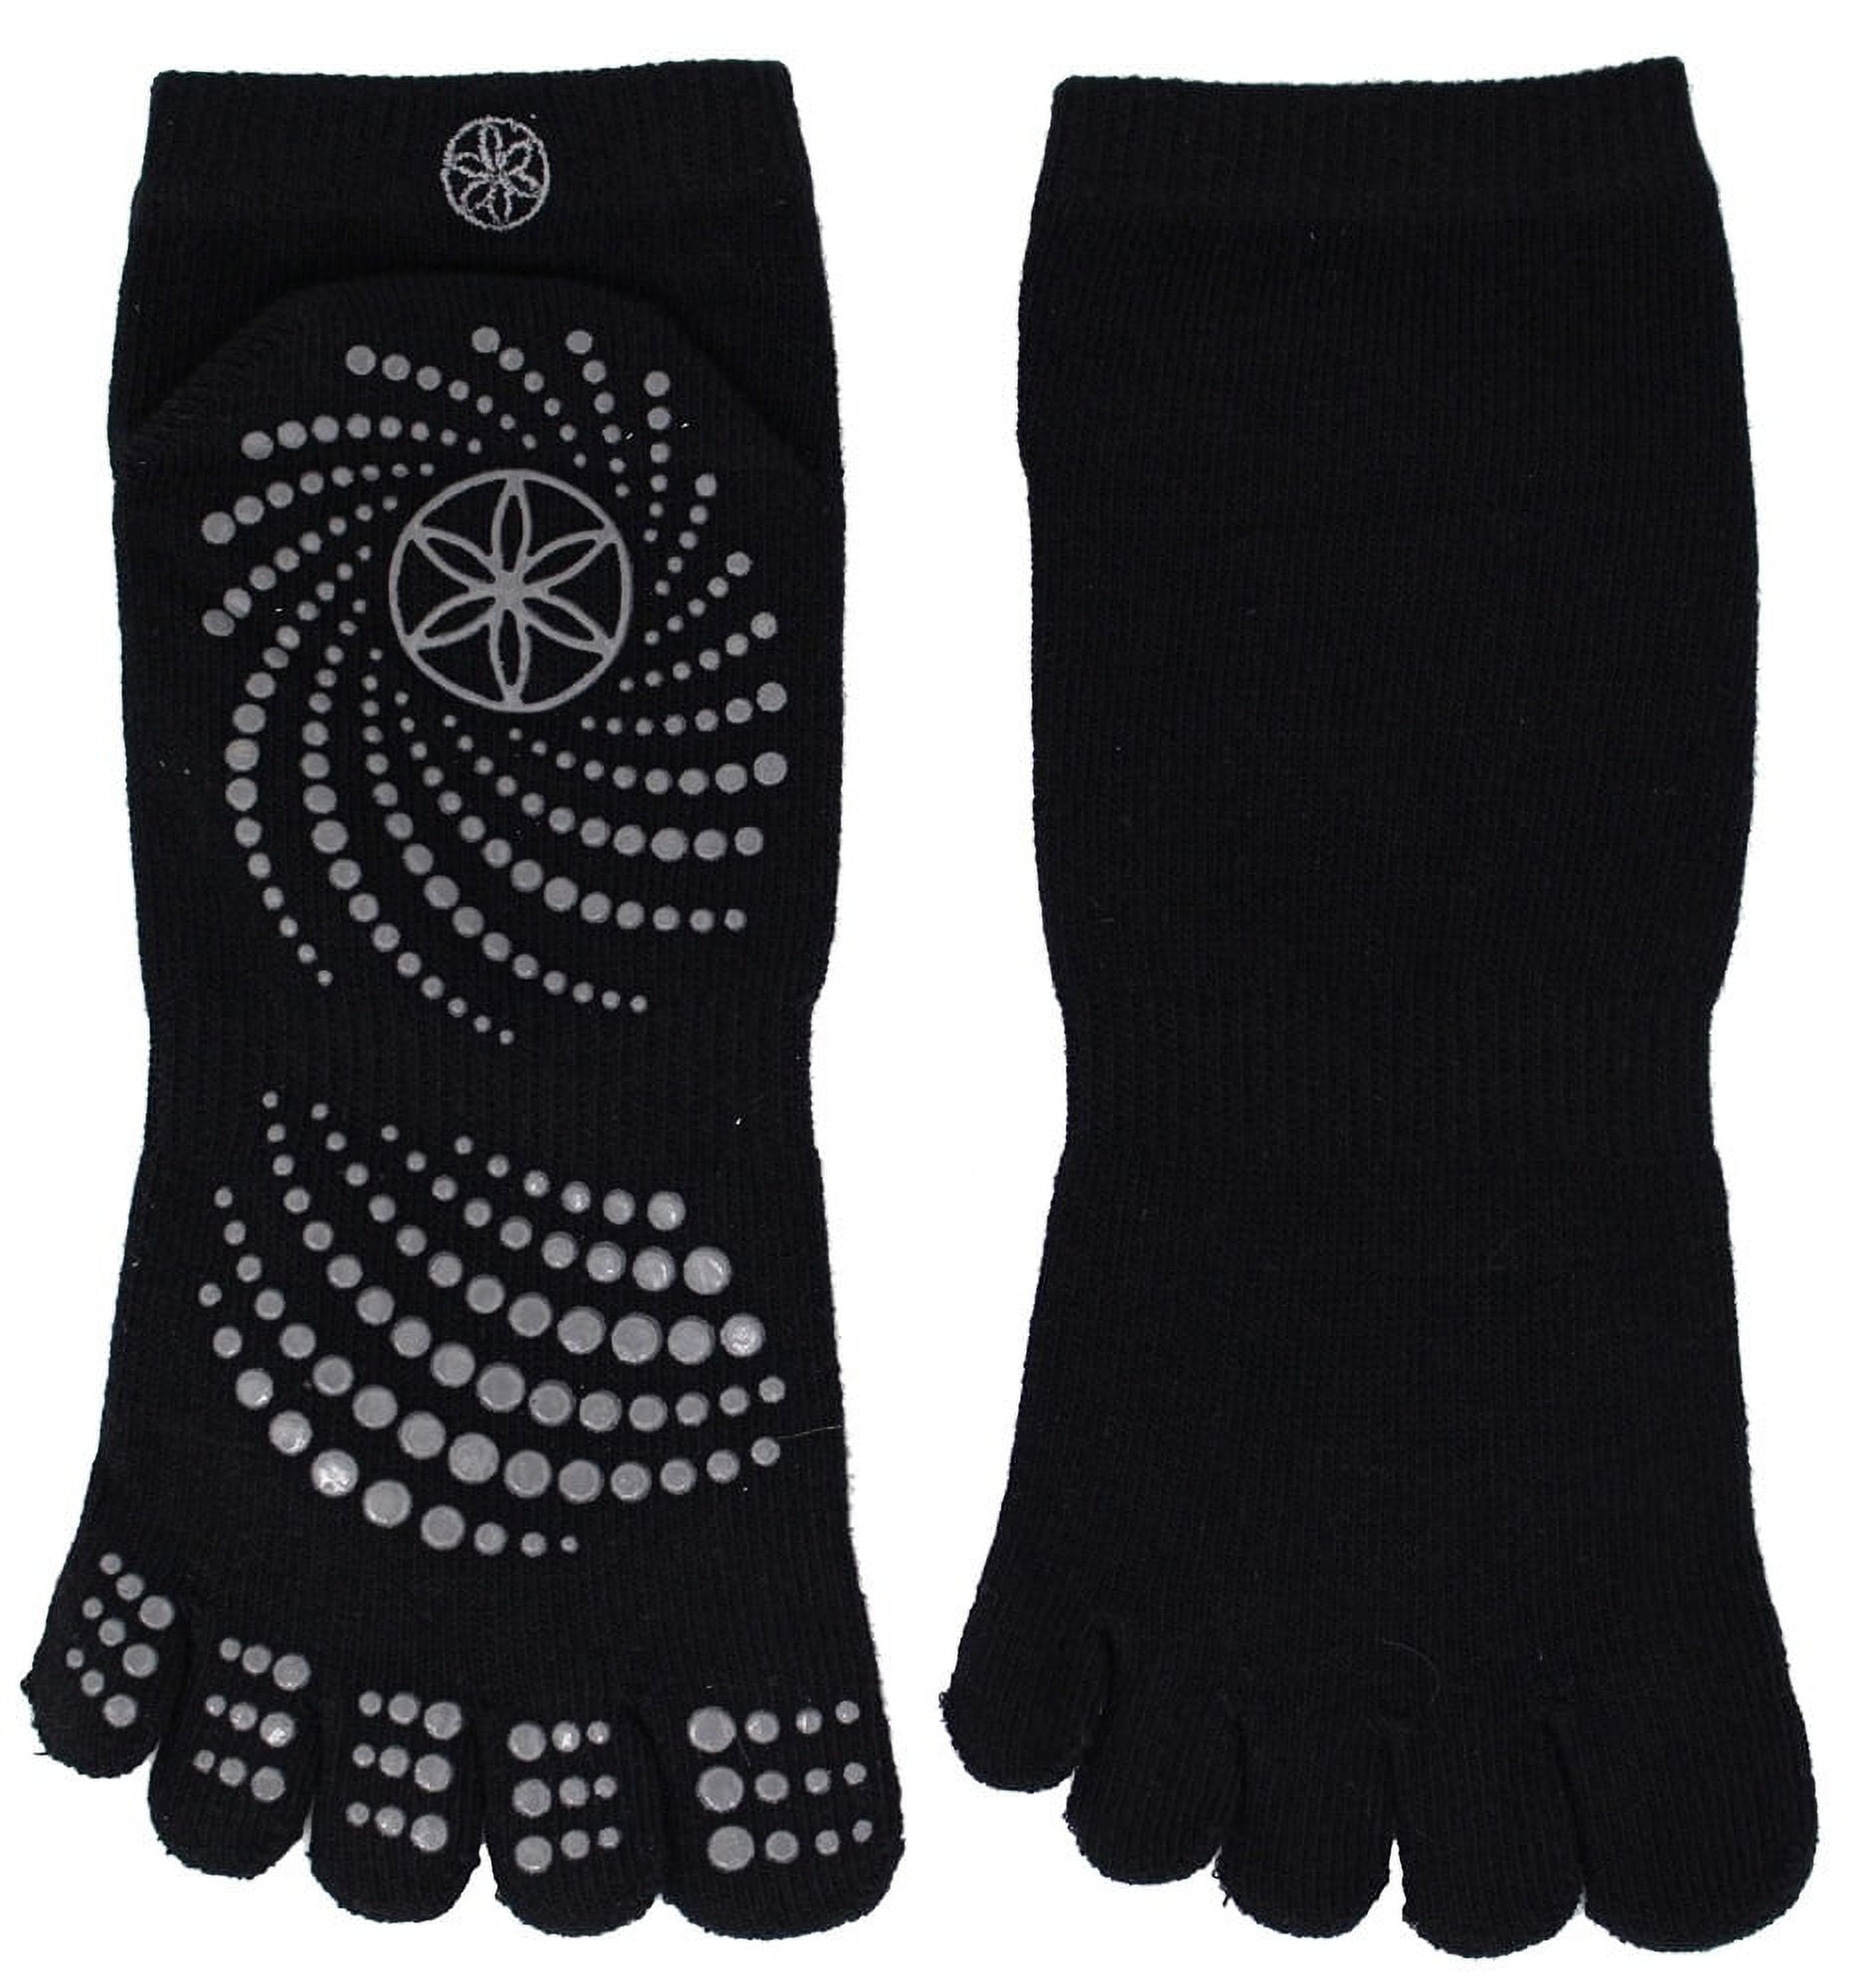 Gaiam All Grip Yoga Socks - Medium/Large - Black/Grey - Walmart